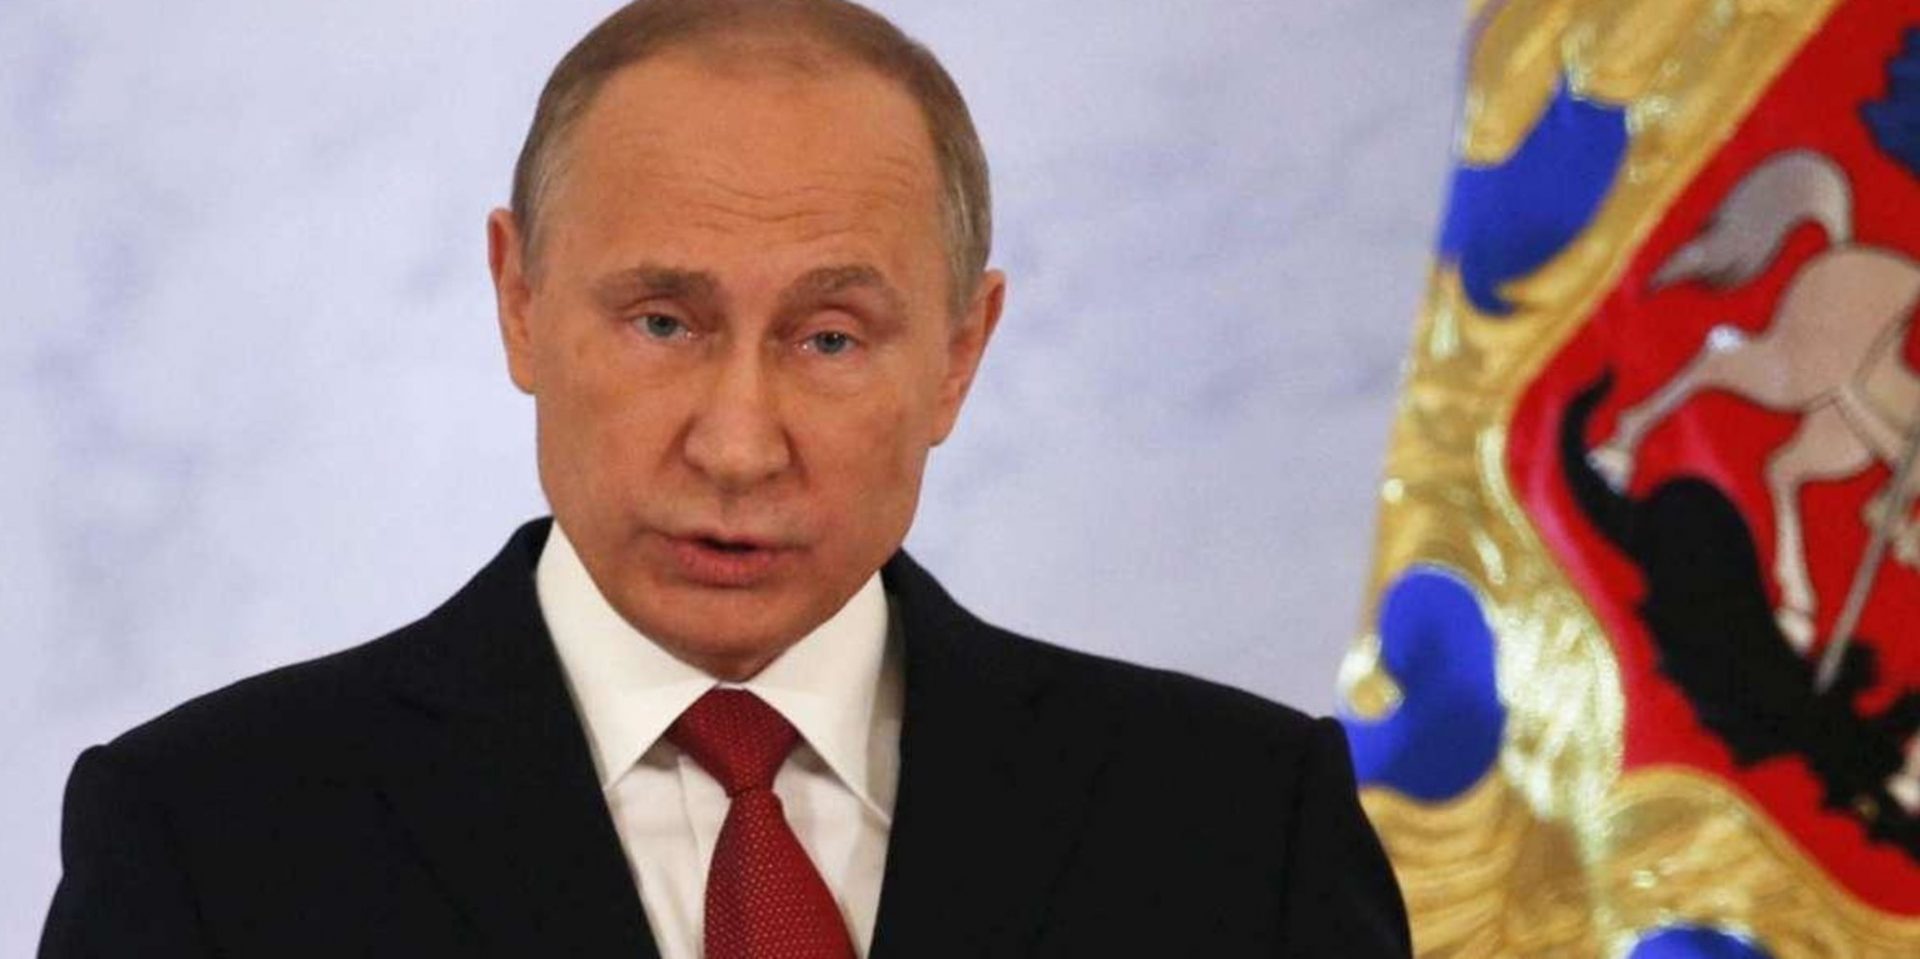 Ucraina: Putin ritira le truppe, ma è una fake news, NATO smentisce